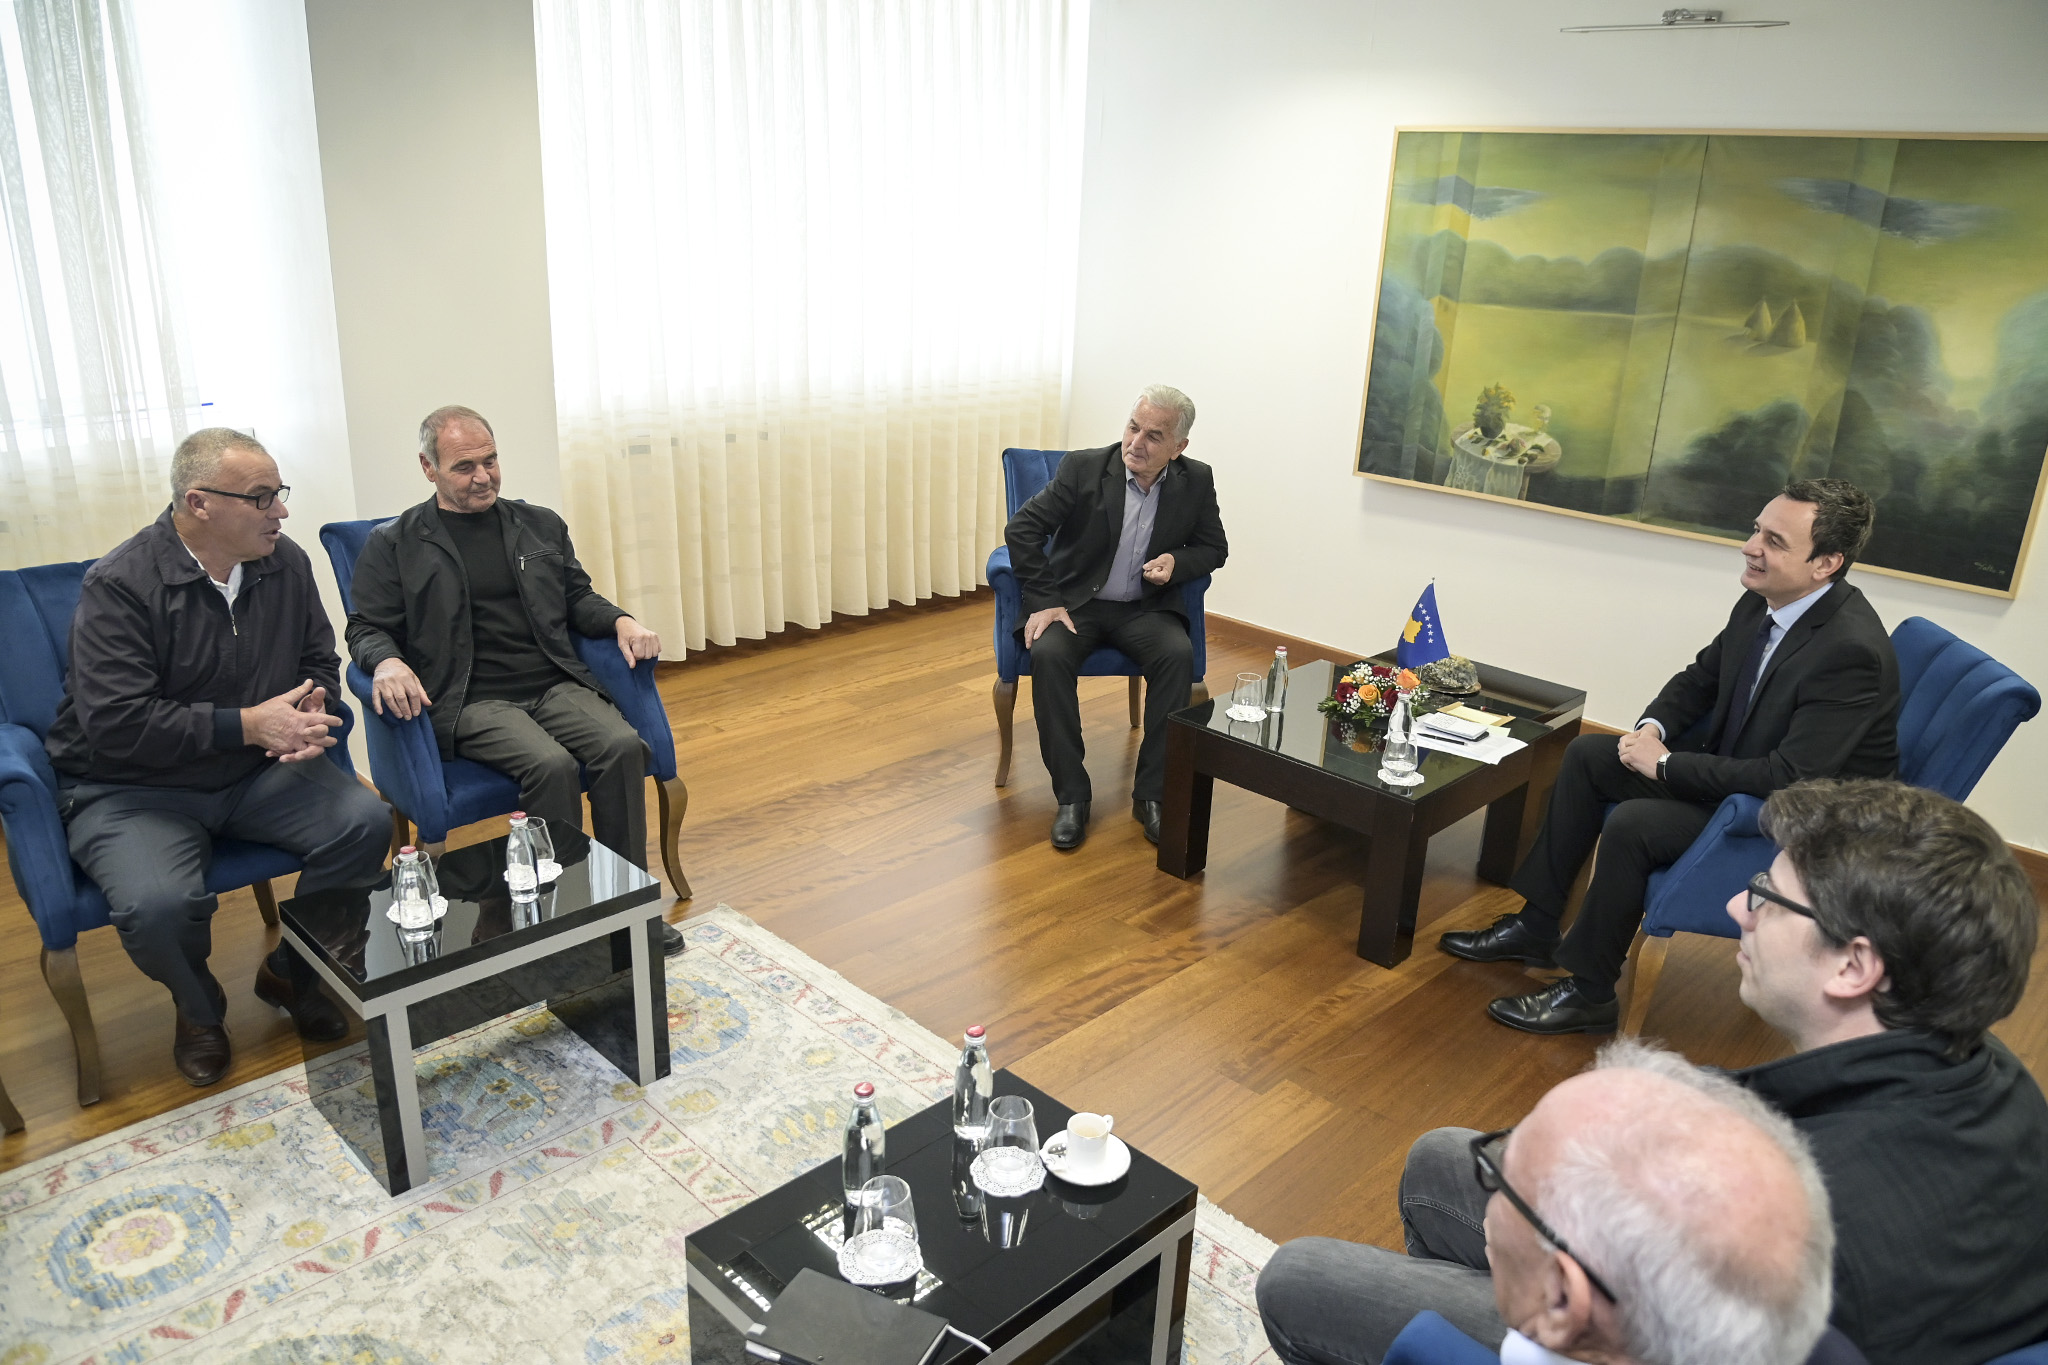 Kryeministri Kurti takoi përfaqësuesit e punëtorëve të fabrikës “Ballkani” nga Suhareka